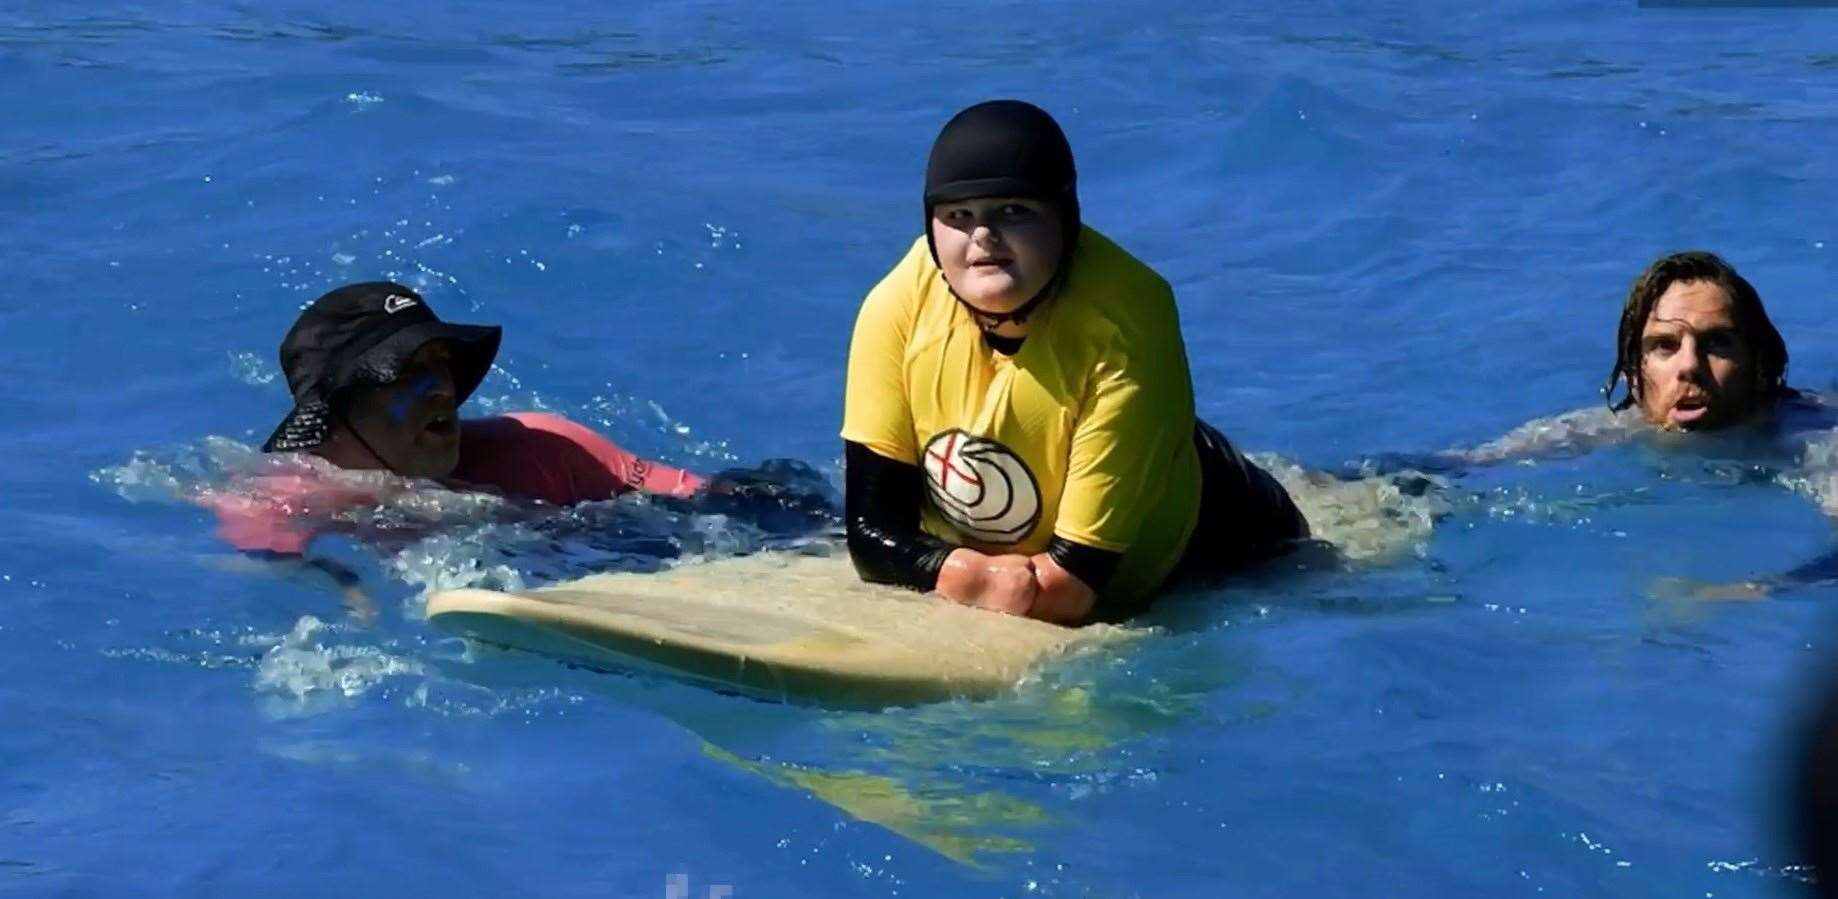 Jade Edward preparing to go surfing